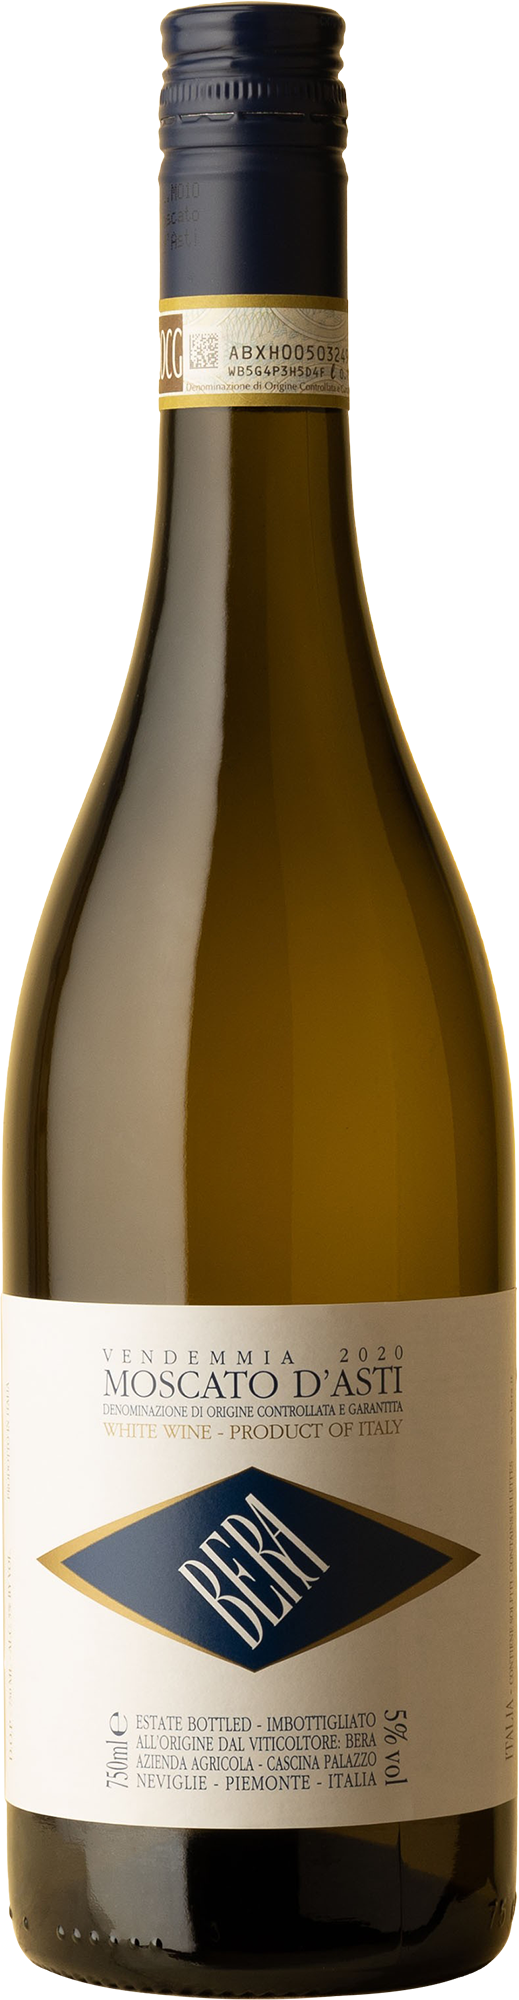 Bera - Moscato d'Asti 2020 White Wine